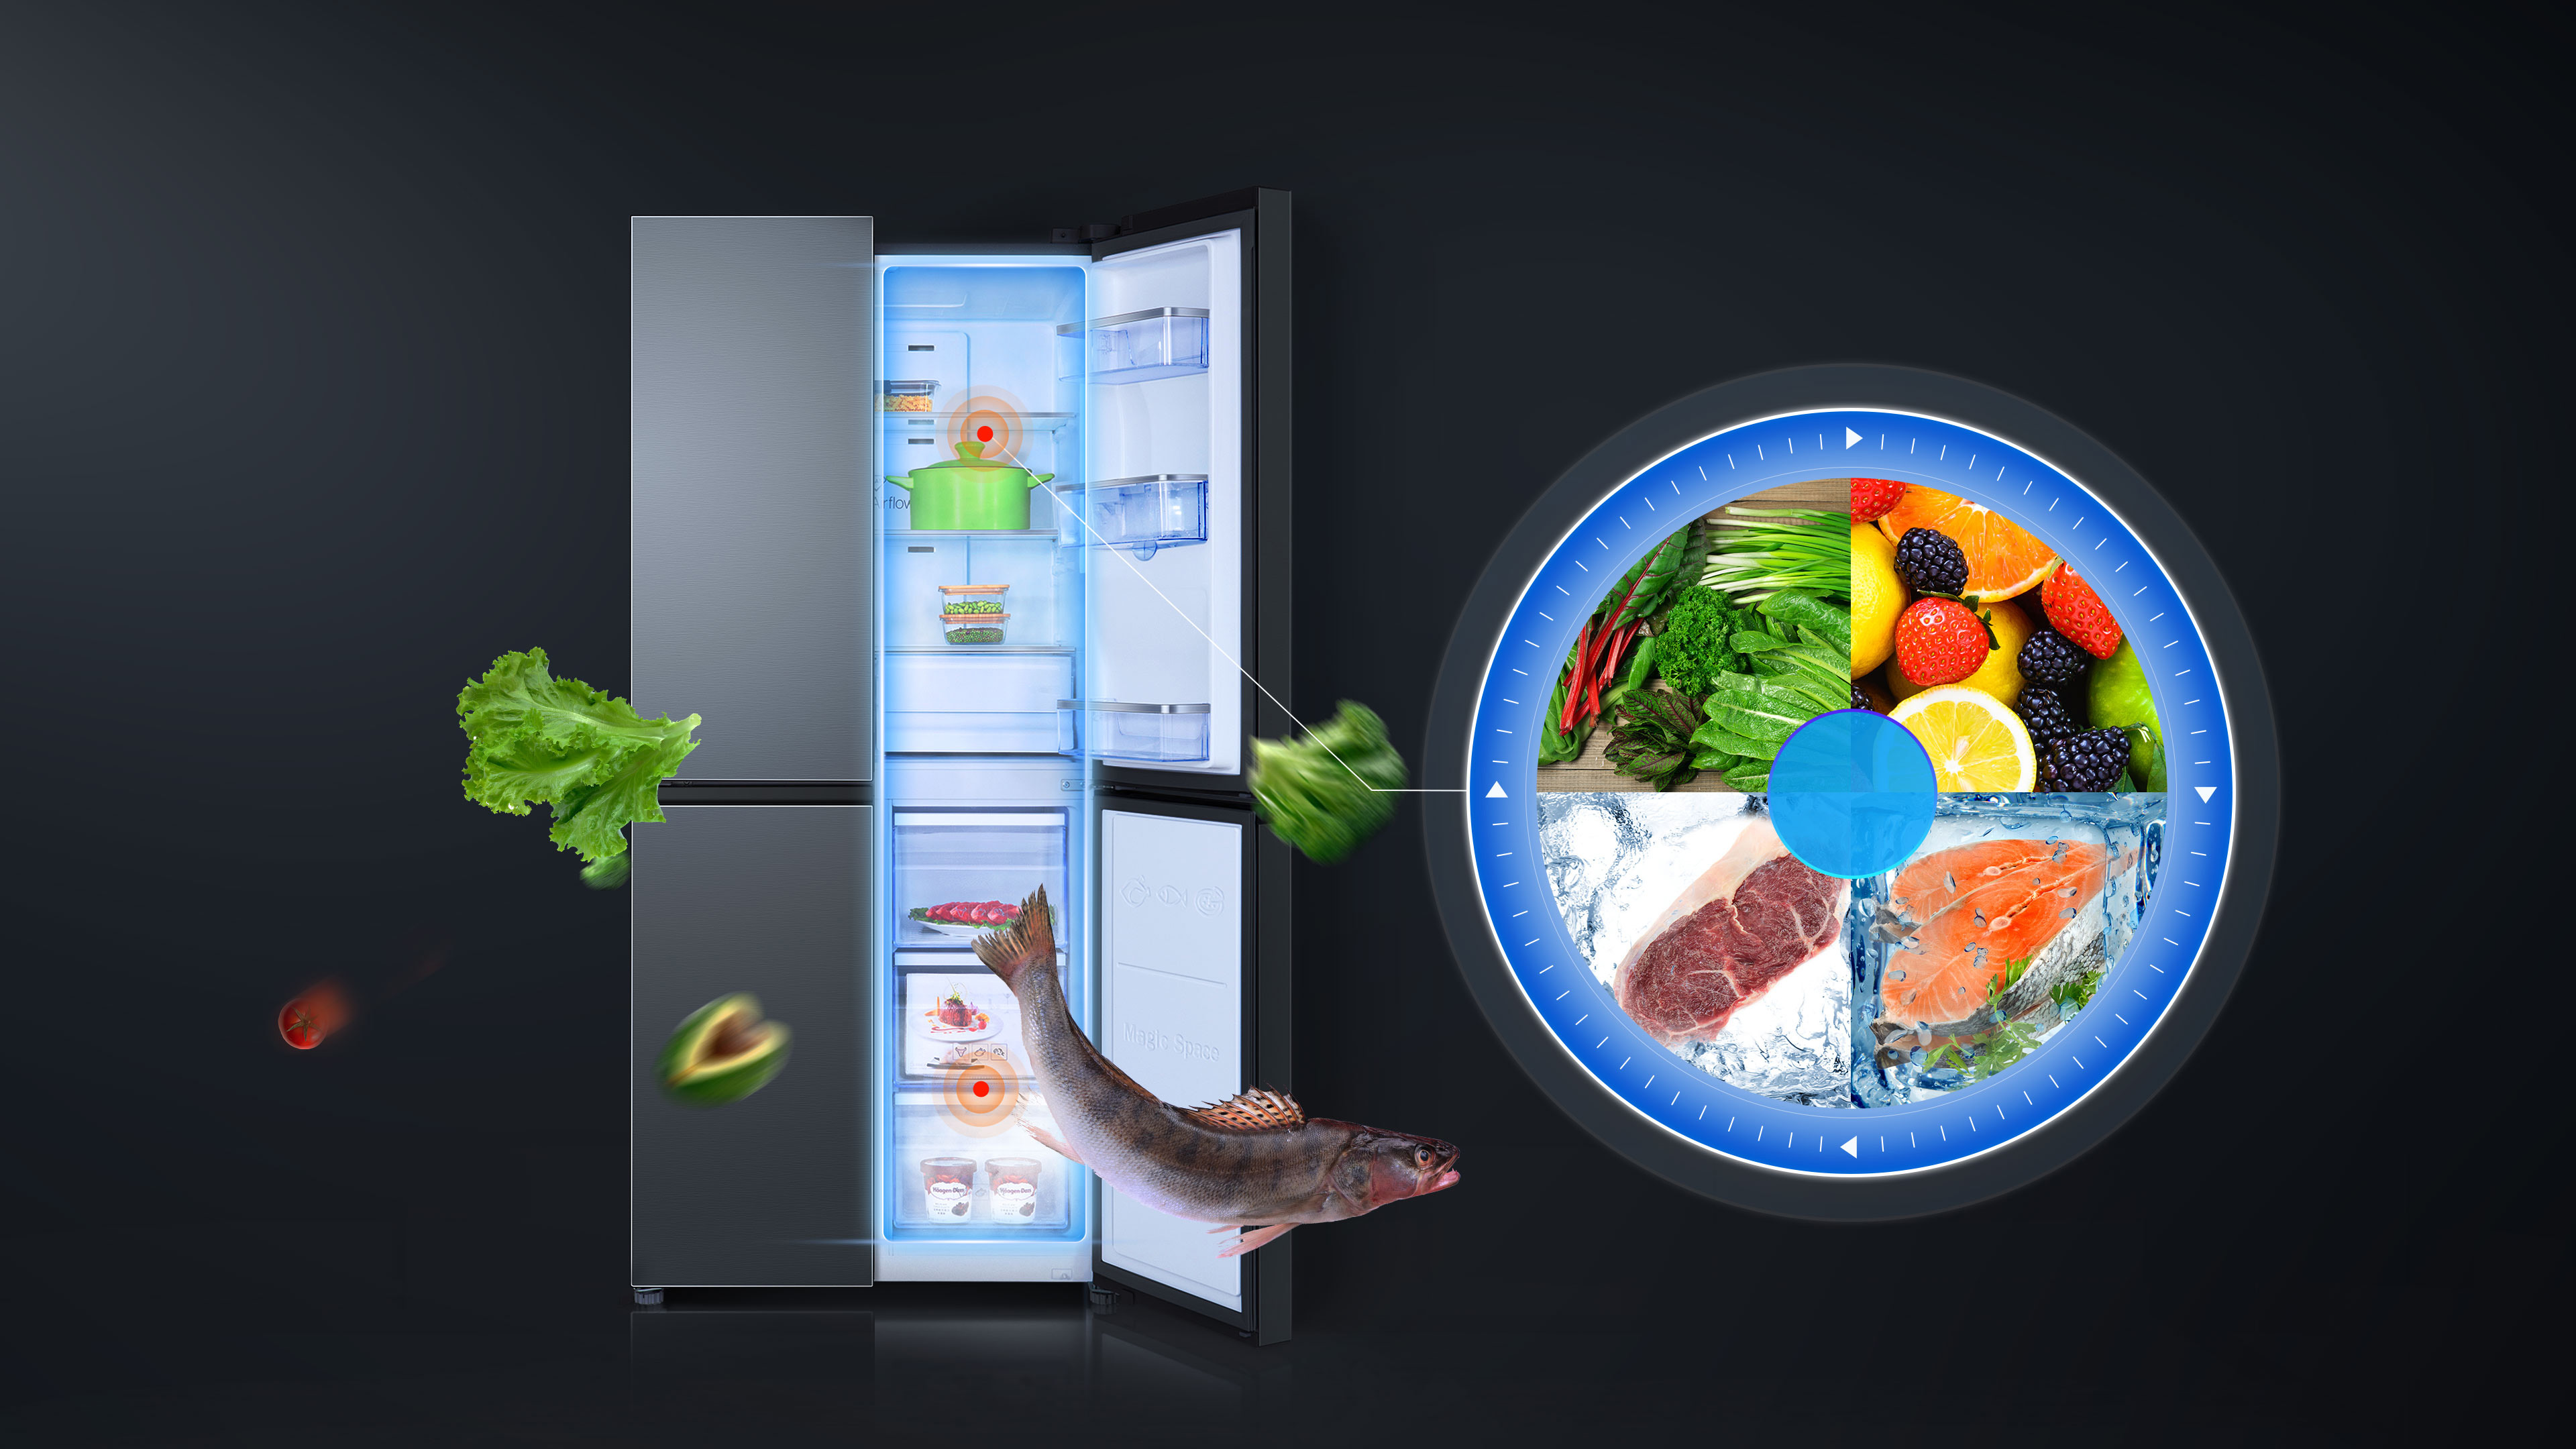 南宫ng·28 Refrigerators AAT technology